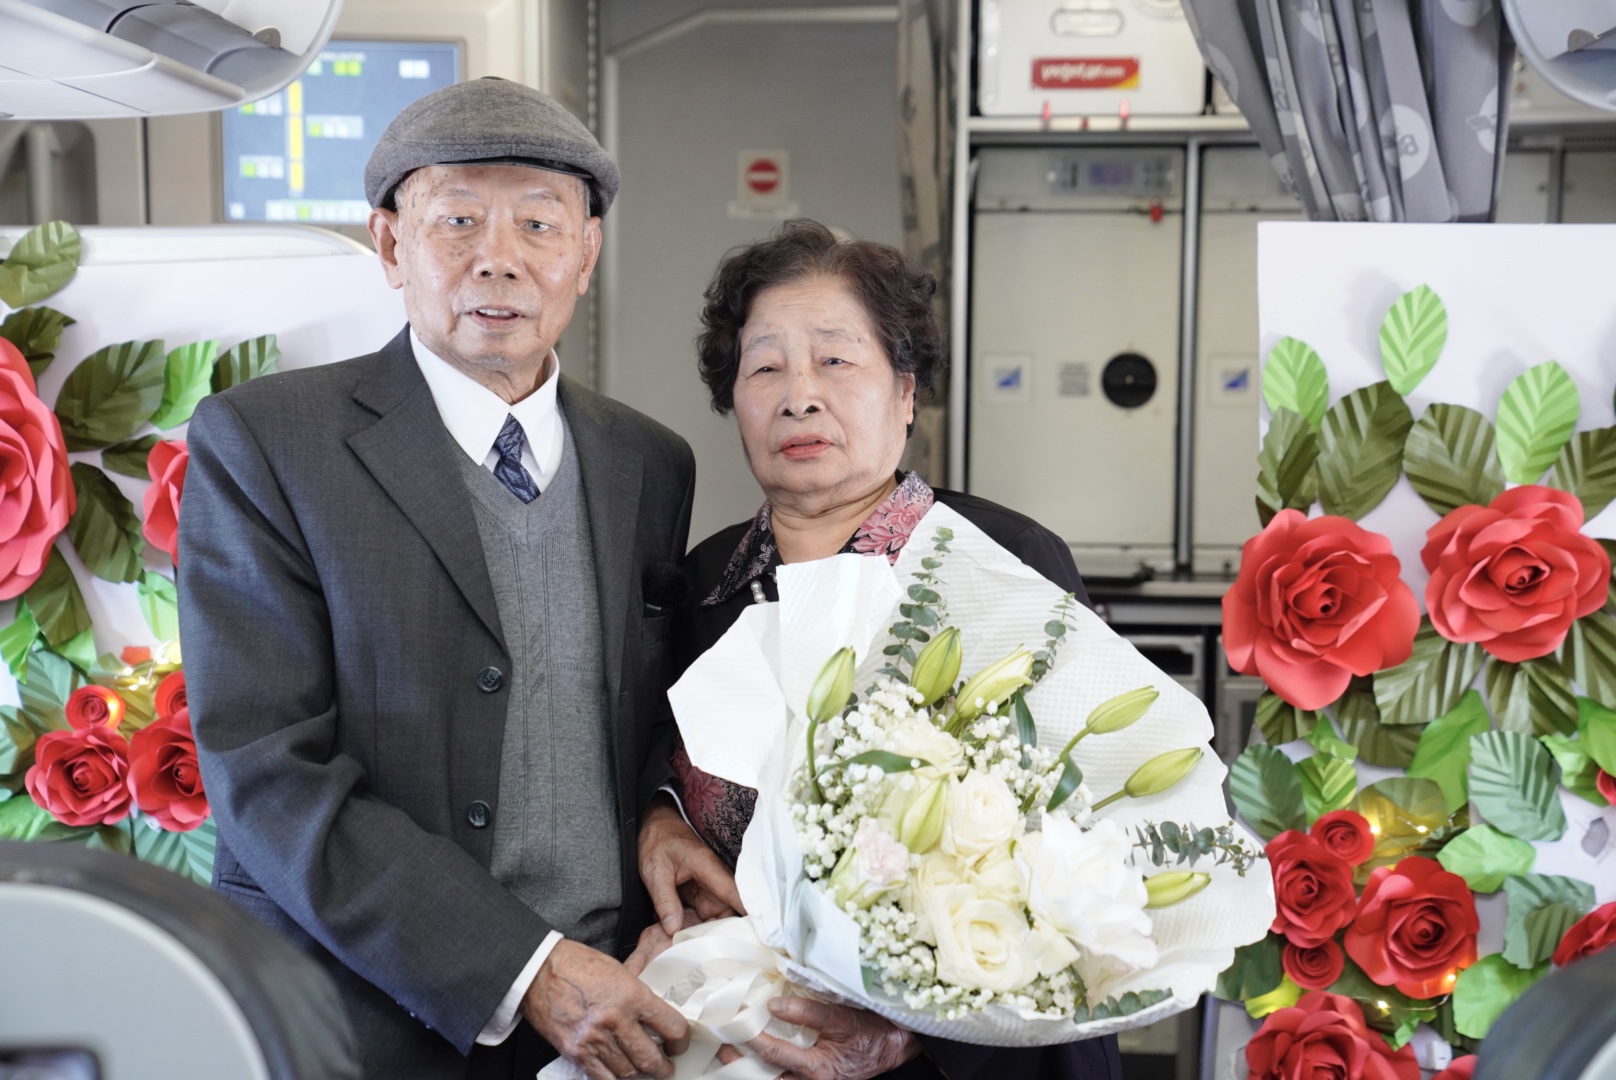 Cụ ông U90 tỏ tình với vợ ngọt ngào trên chuyến bay Vietjet ngày Valentine- Ảnh 3.